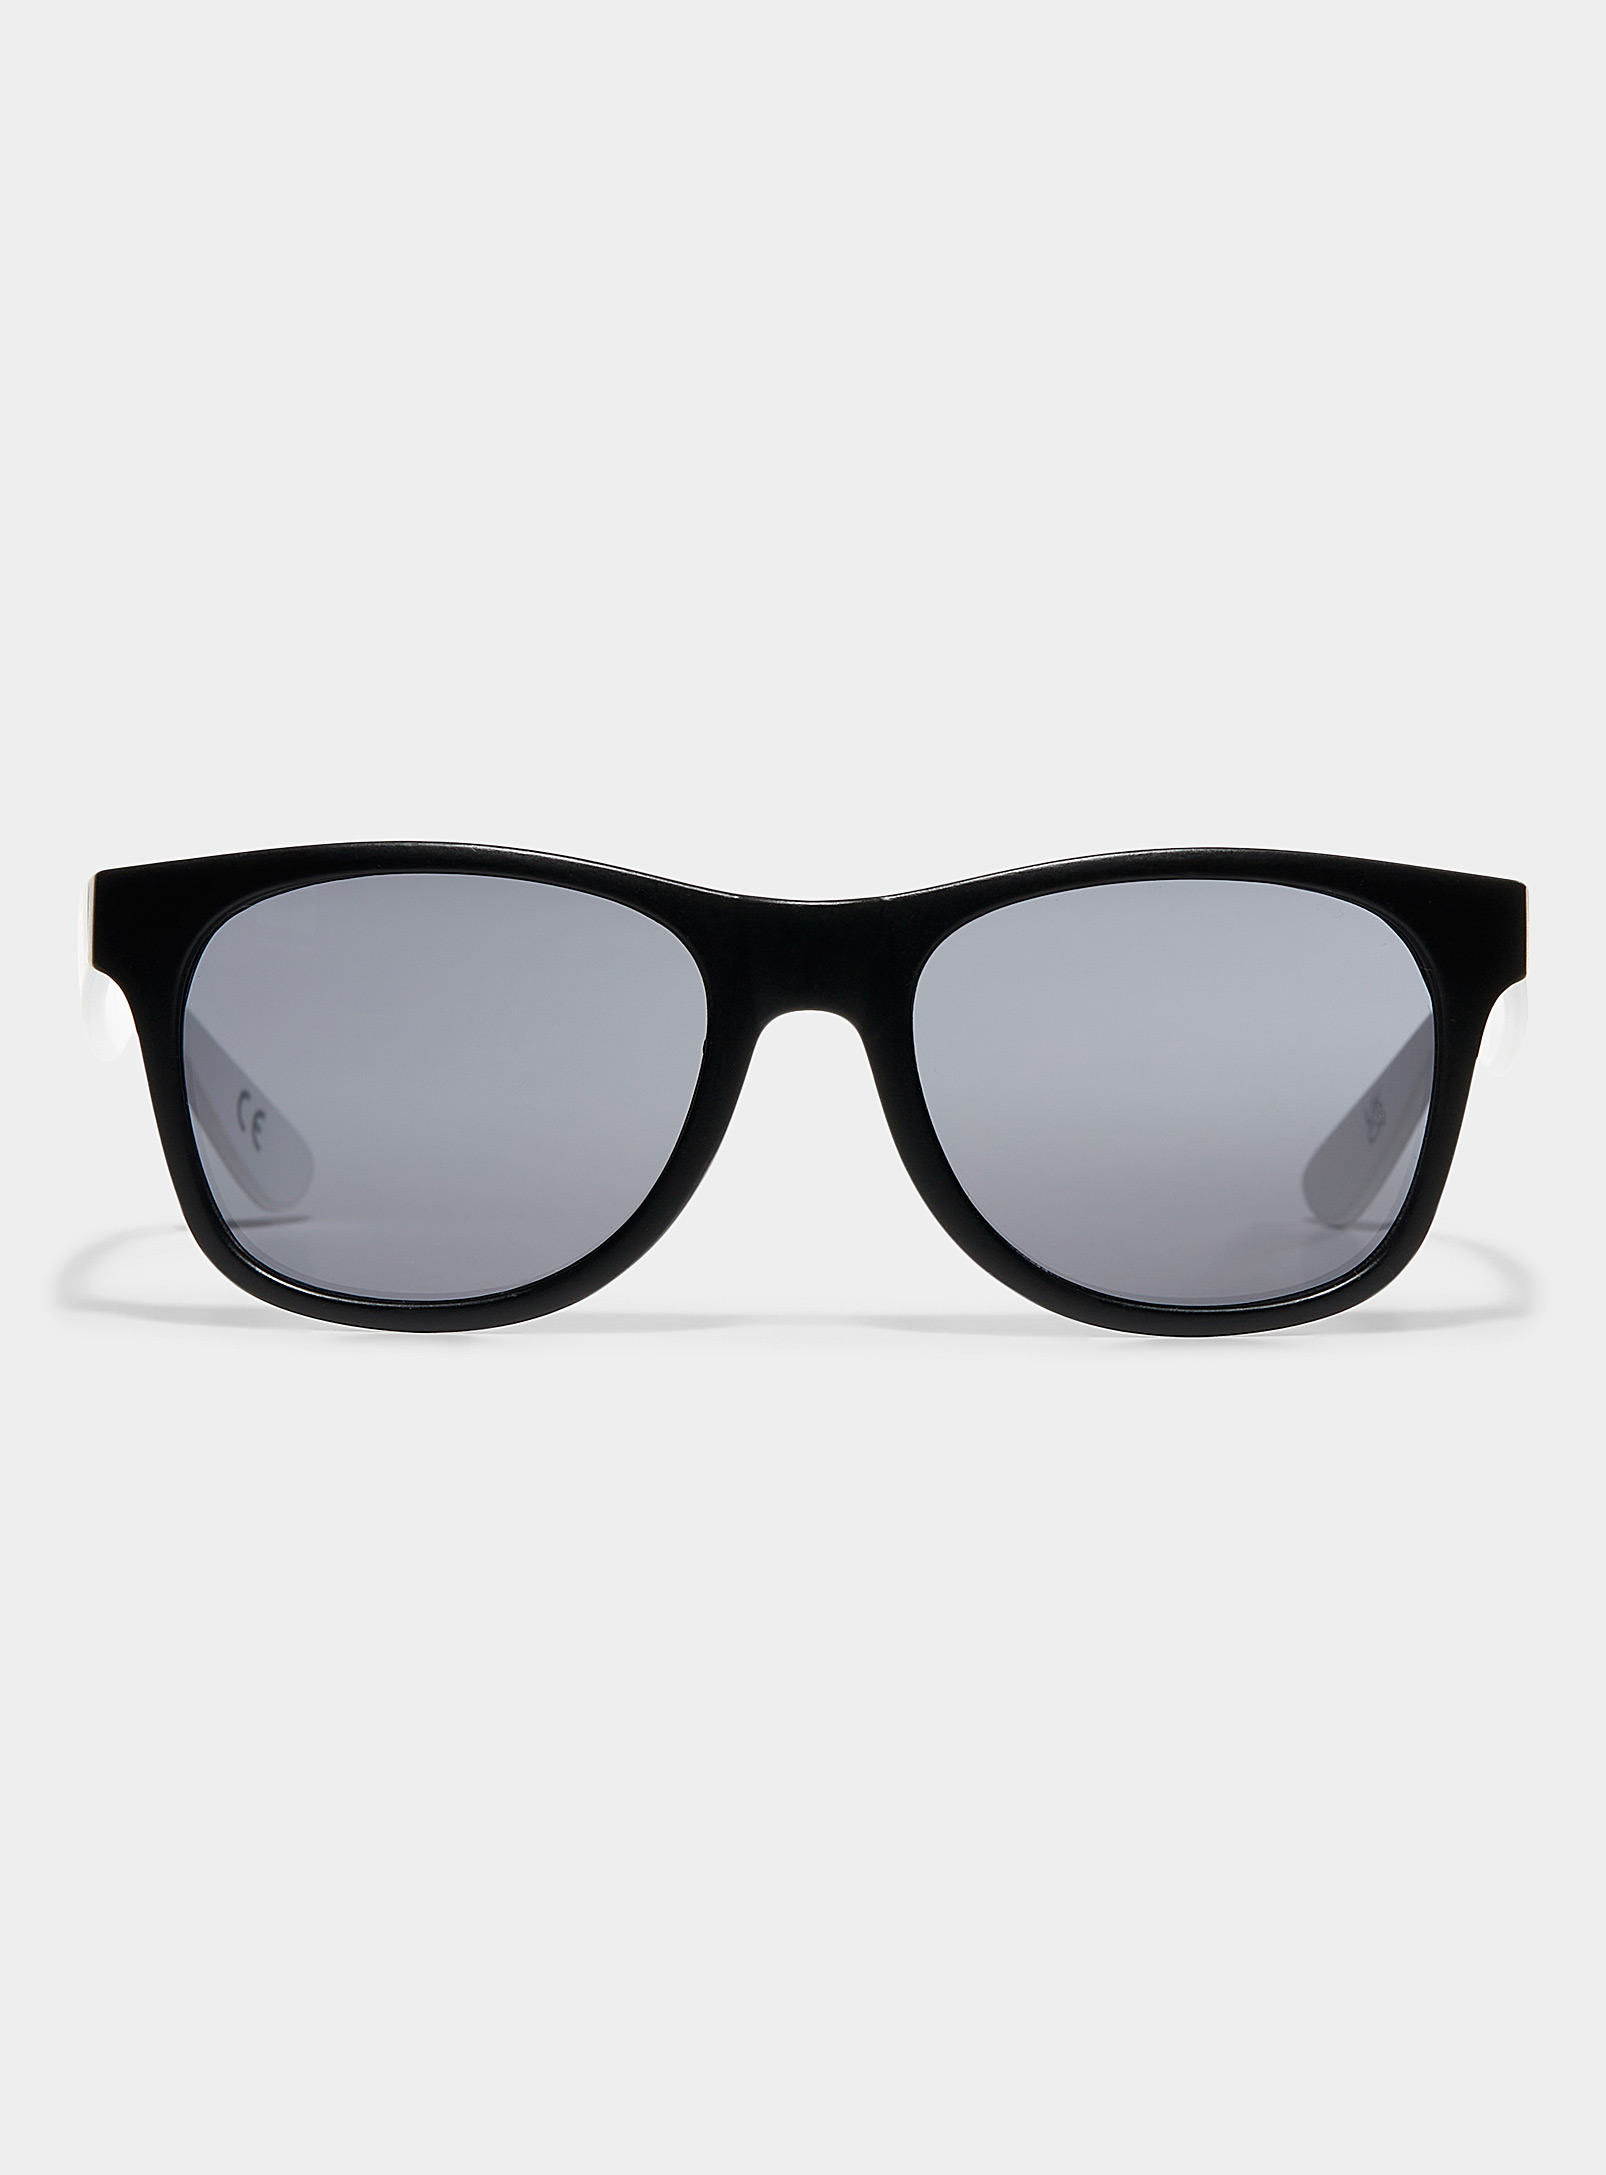 Vans Spicoli Sunglasses In Black